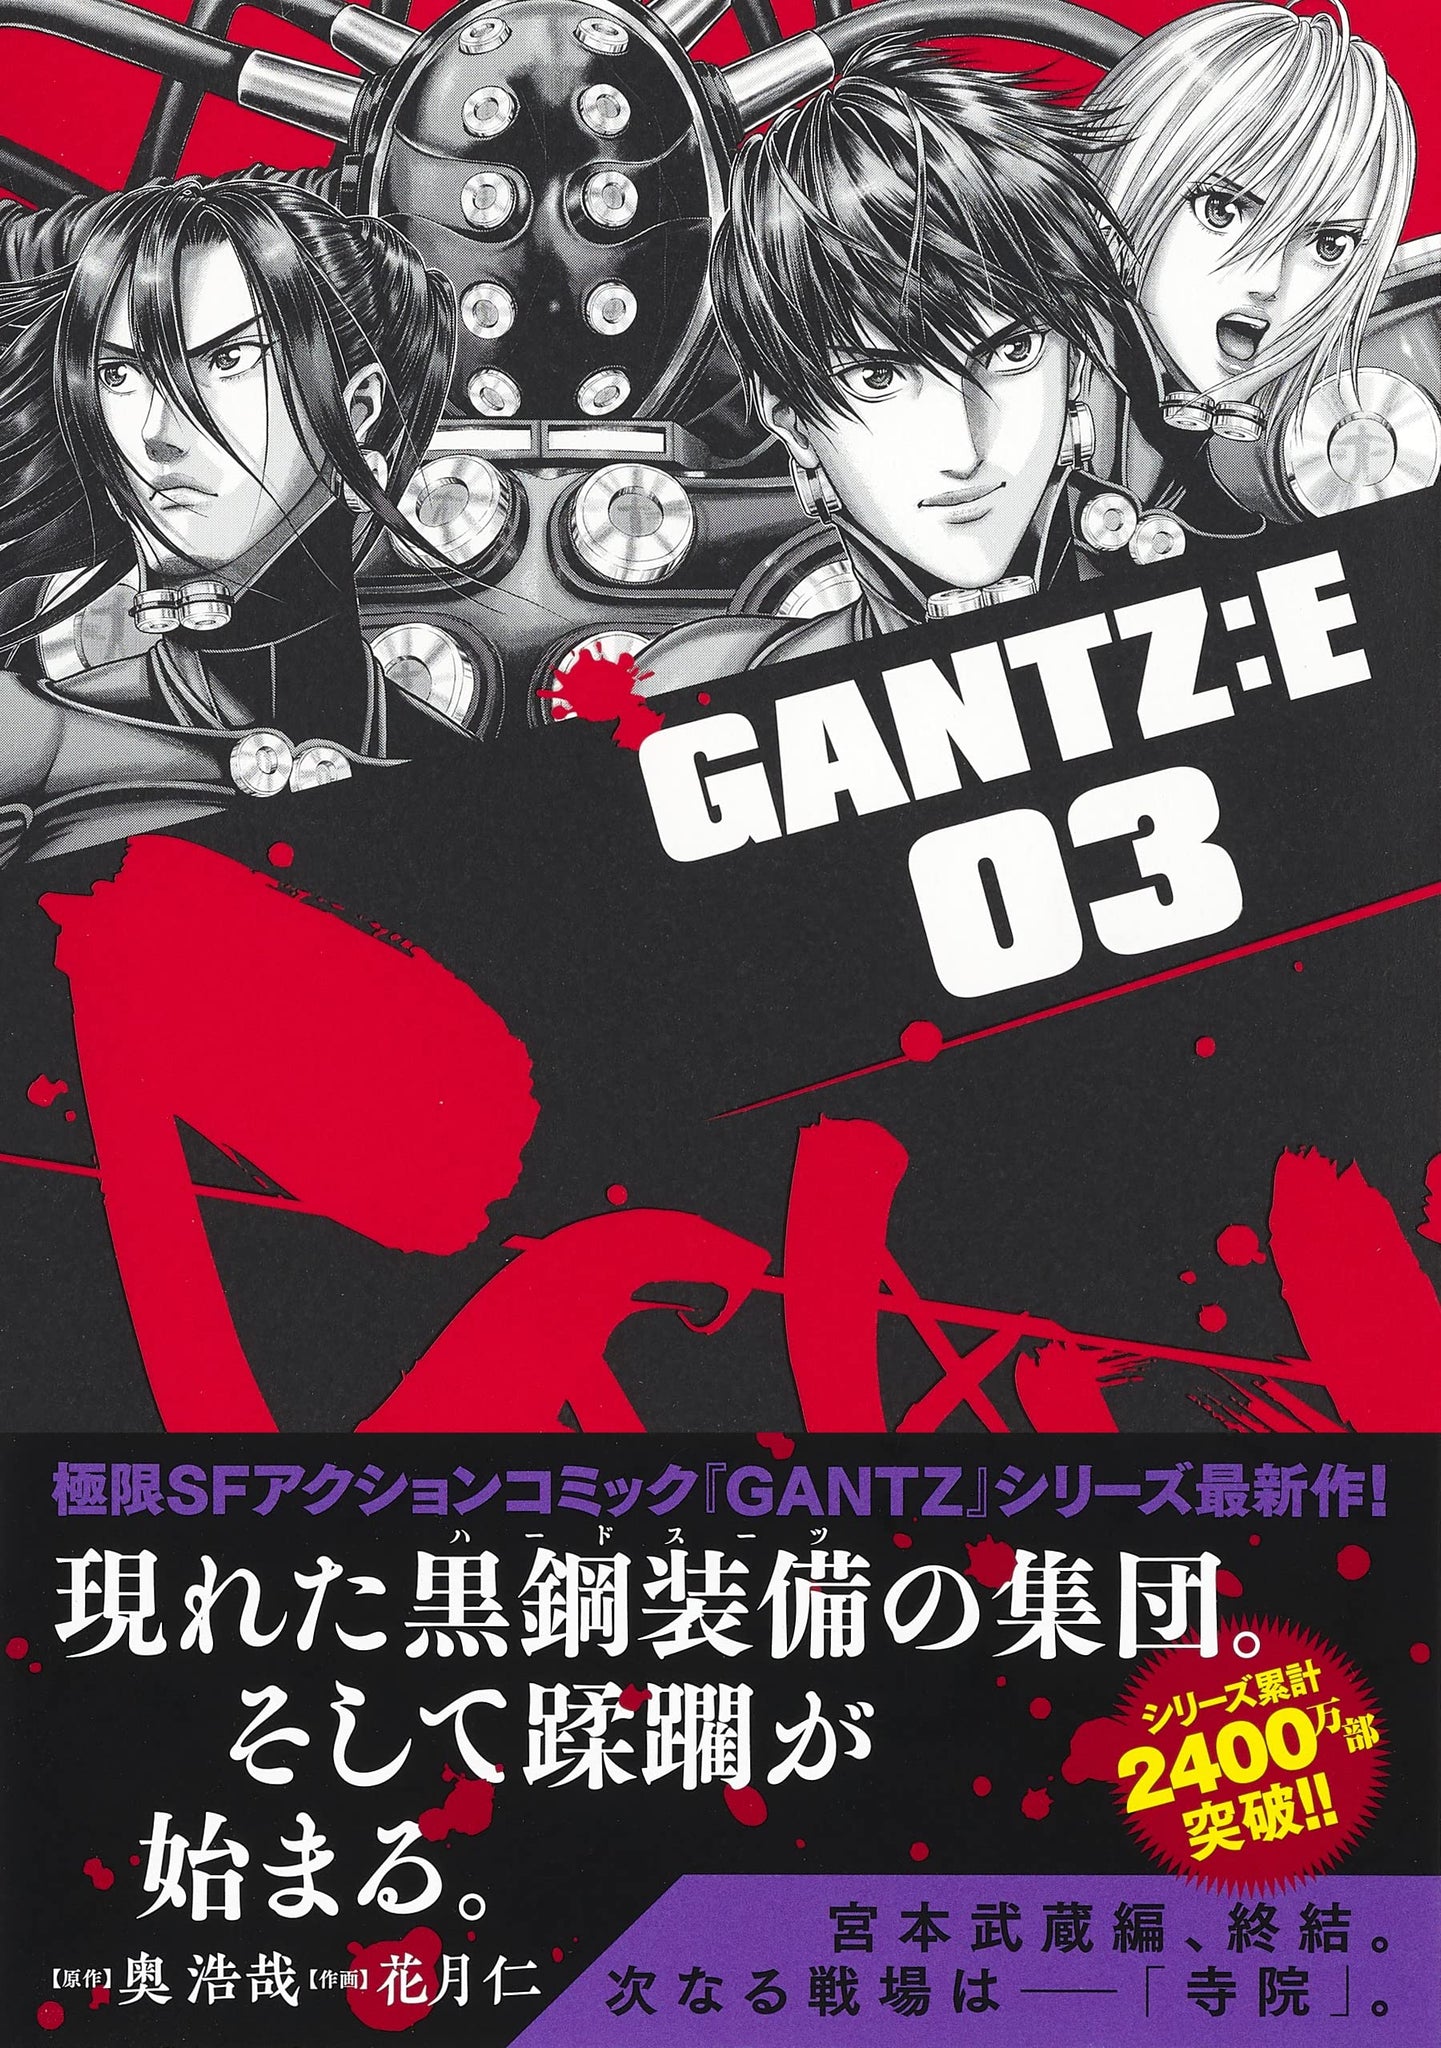 GANTZ 1-37巻（全巻）、Gantz:G1-3巻 、GANTZ/MINUS